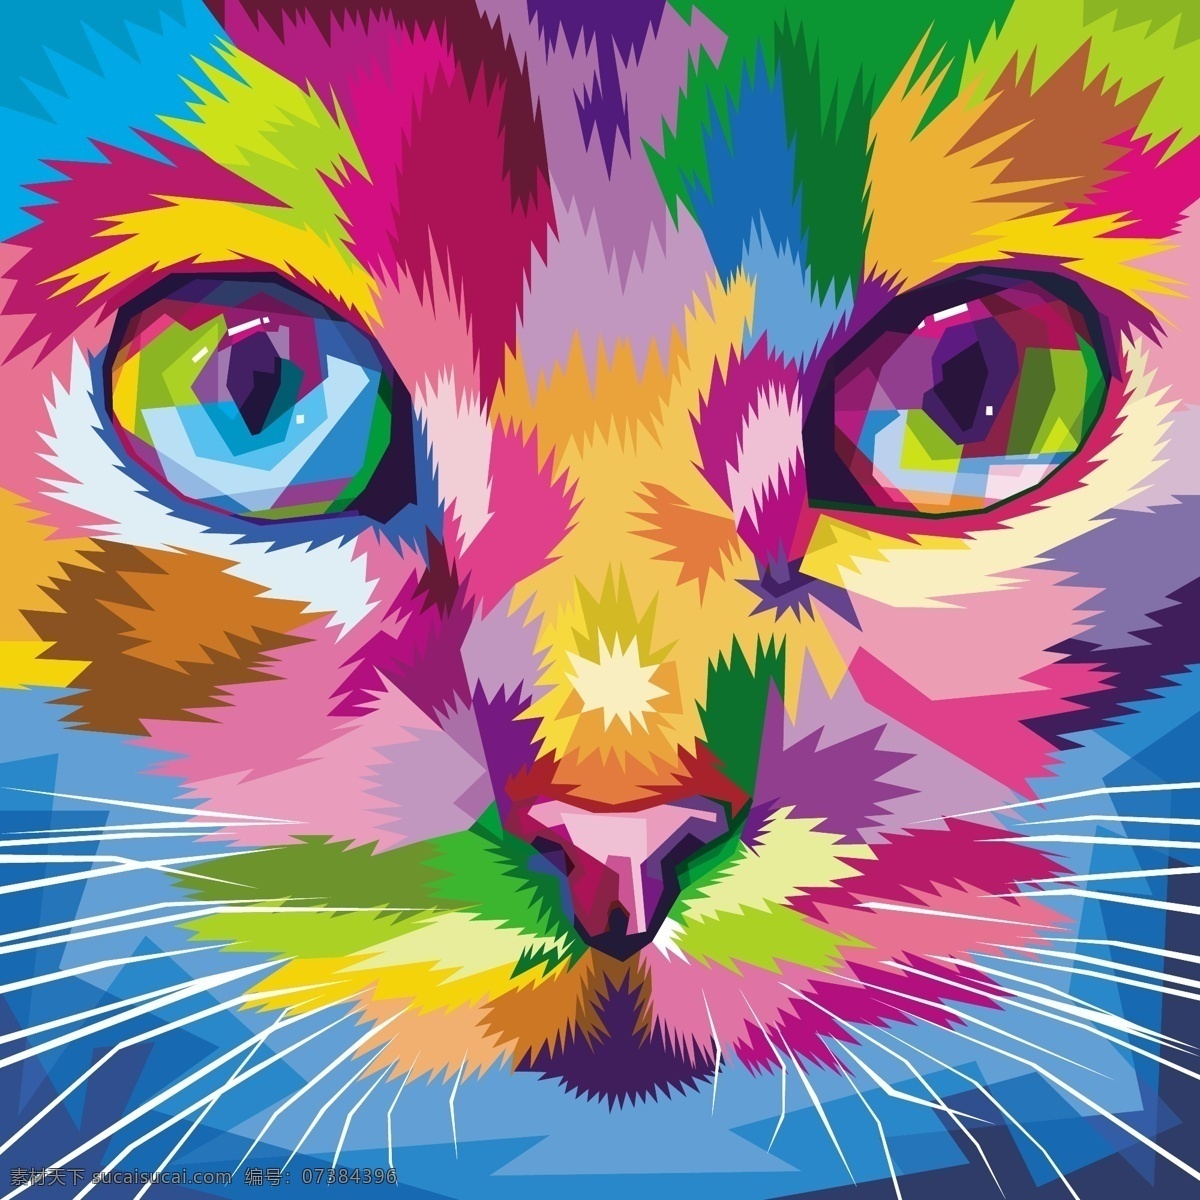 卡通动物 设计素材 背景图片 装饰画 无框画 挂画 现代画 手绘猫 家猫 猫咪 胡须 生物世界 野生动物